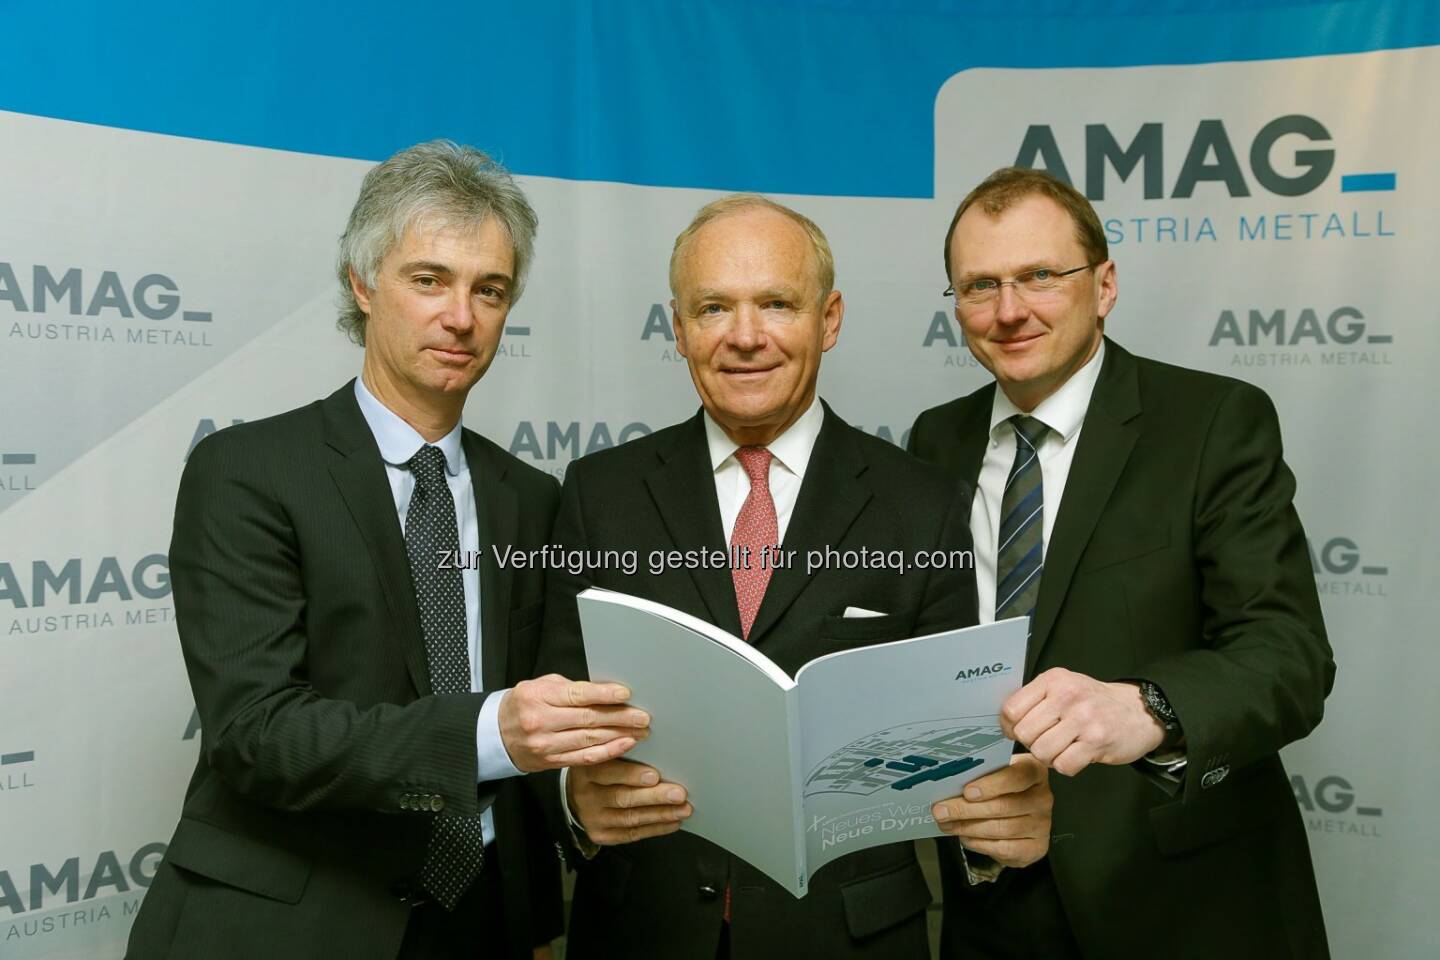 Helmut Kaufmann, Helmut Wieser und  Gerald Mayer: Amag Austria Metall AG: Amag in 2014 mit Anstieg bei Umsatz und Ergebnis nach Ertragsteuern